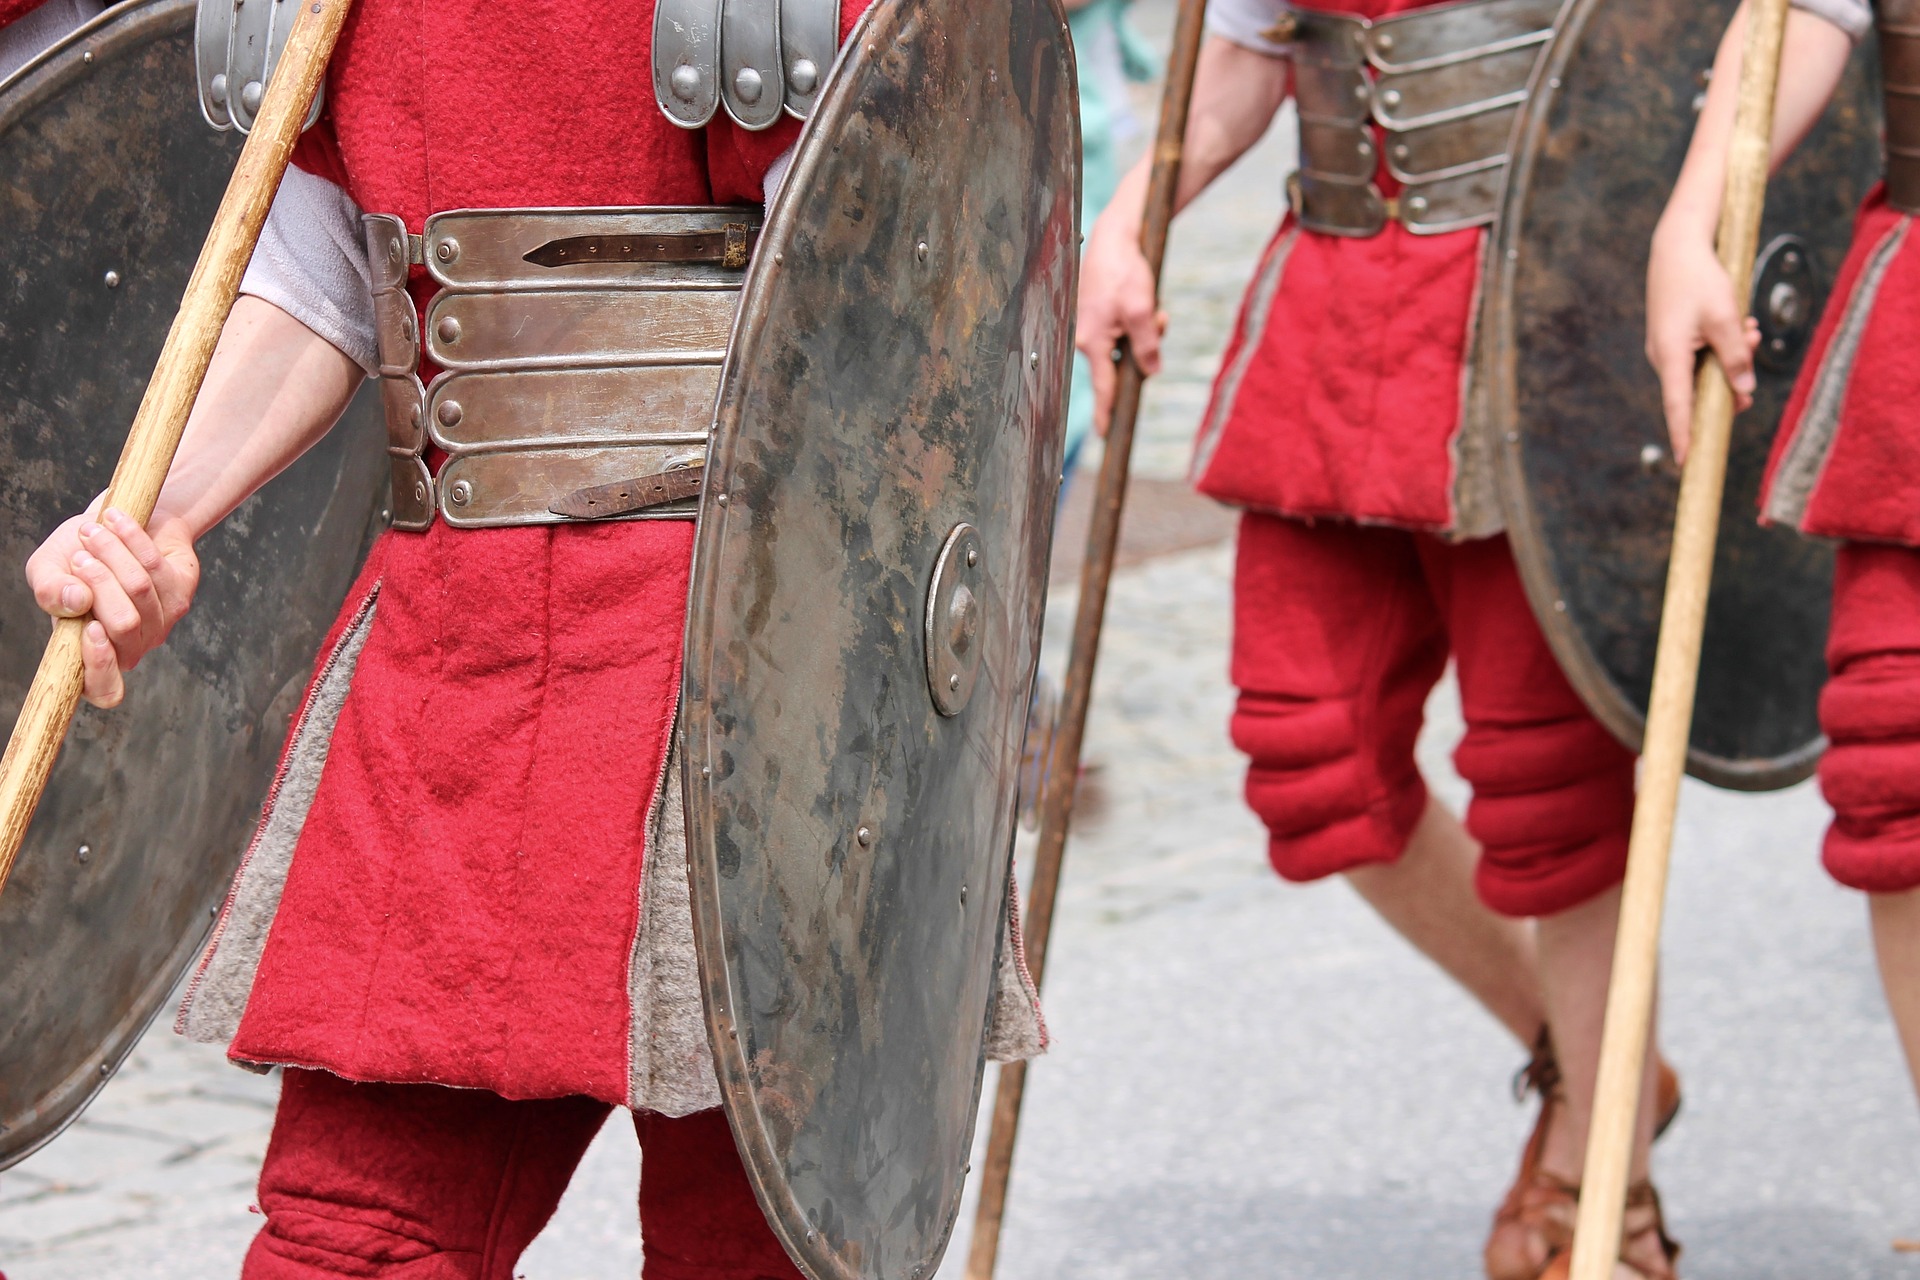 Manfred Richter, Romeinse soldaten. Bron: Pixabay